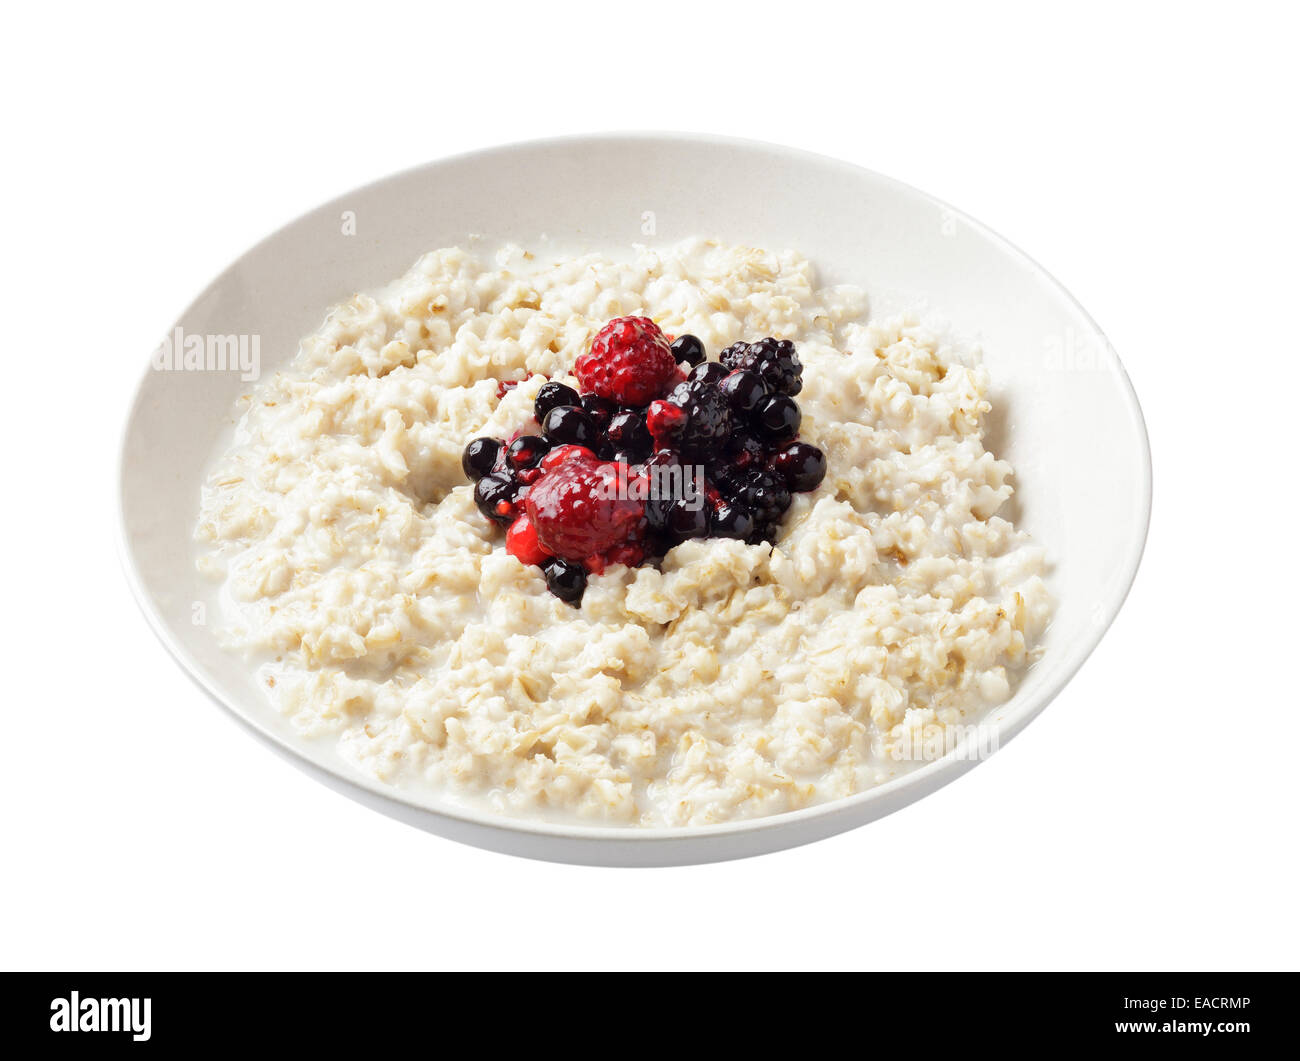 Porridge with berries Stock Photo